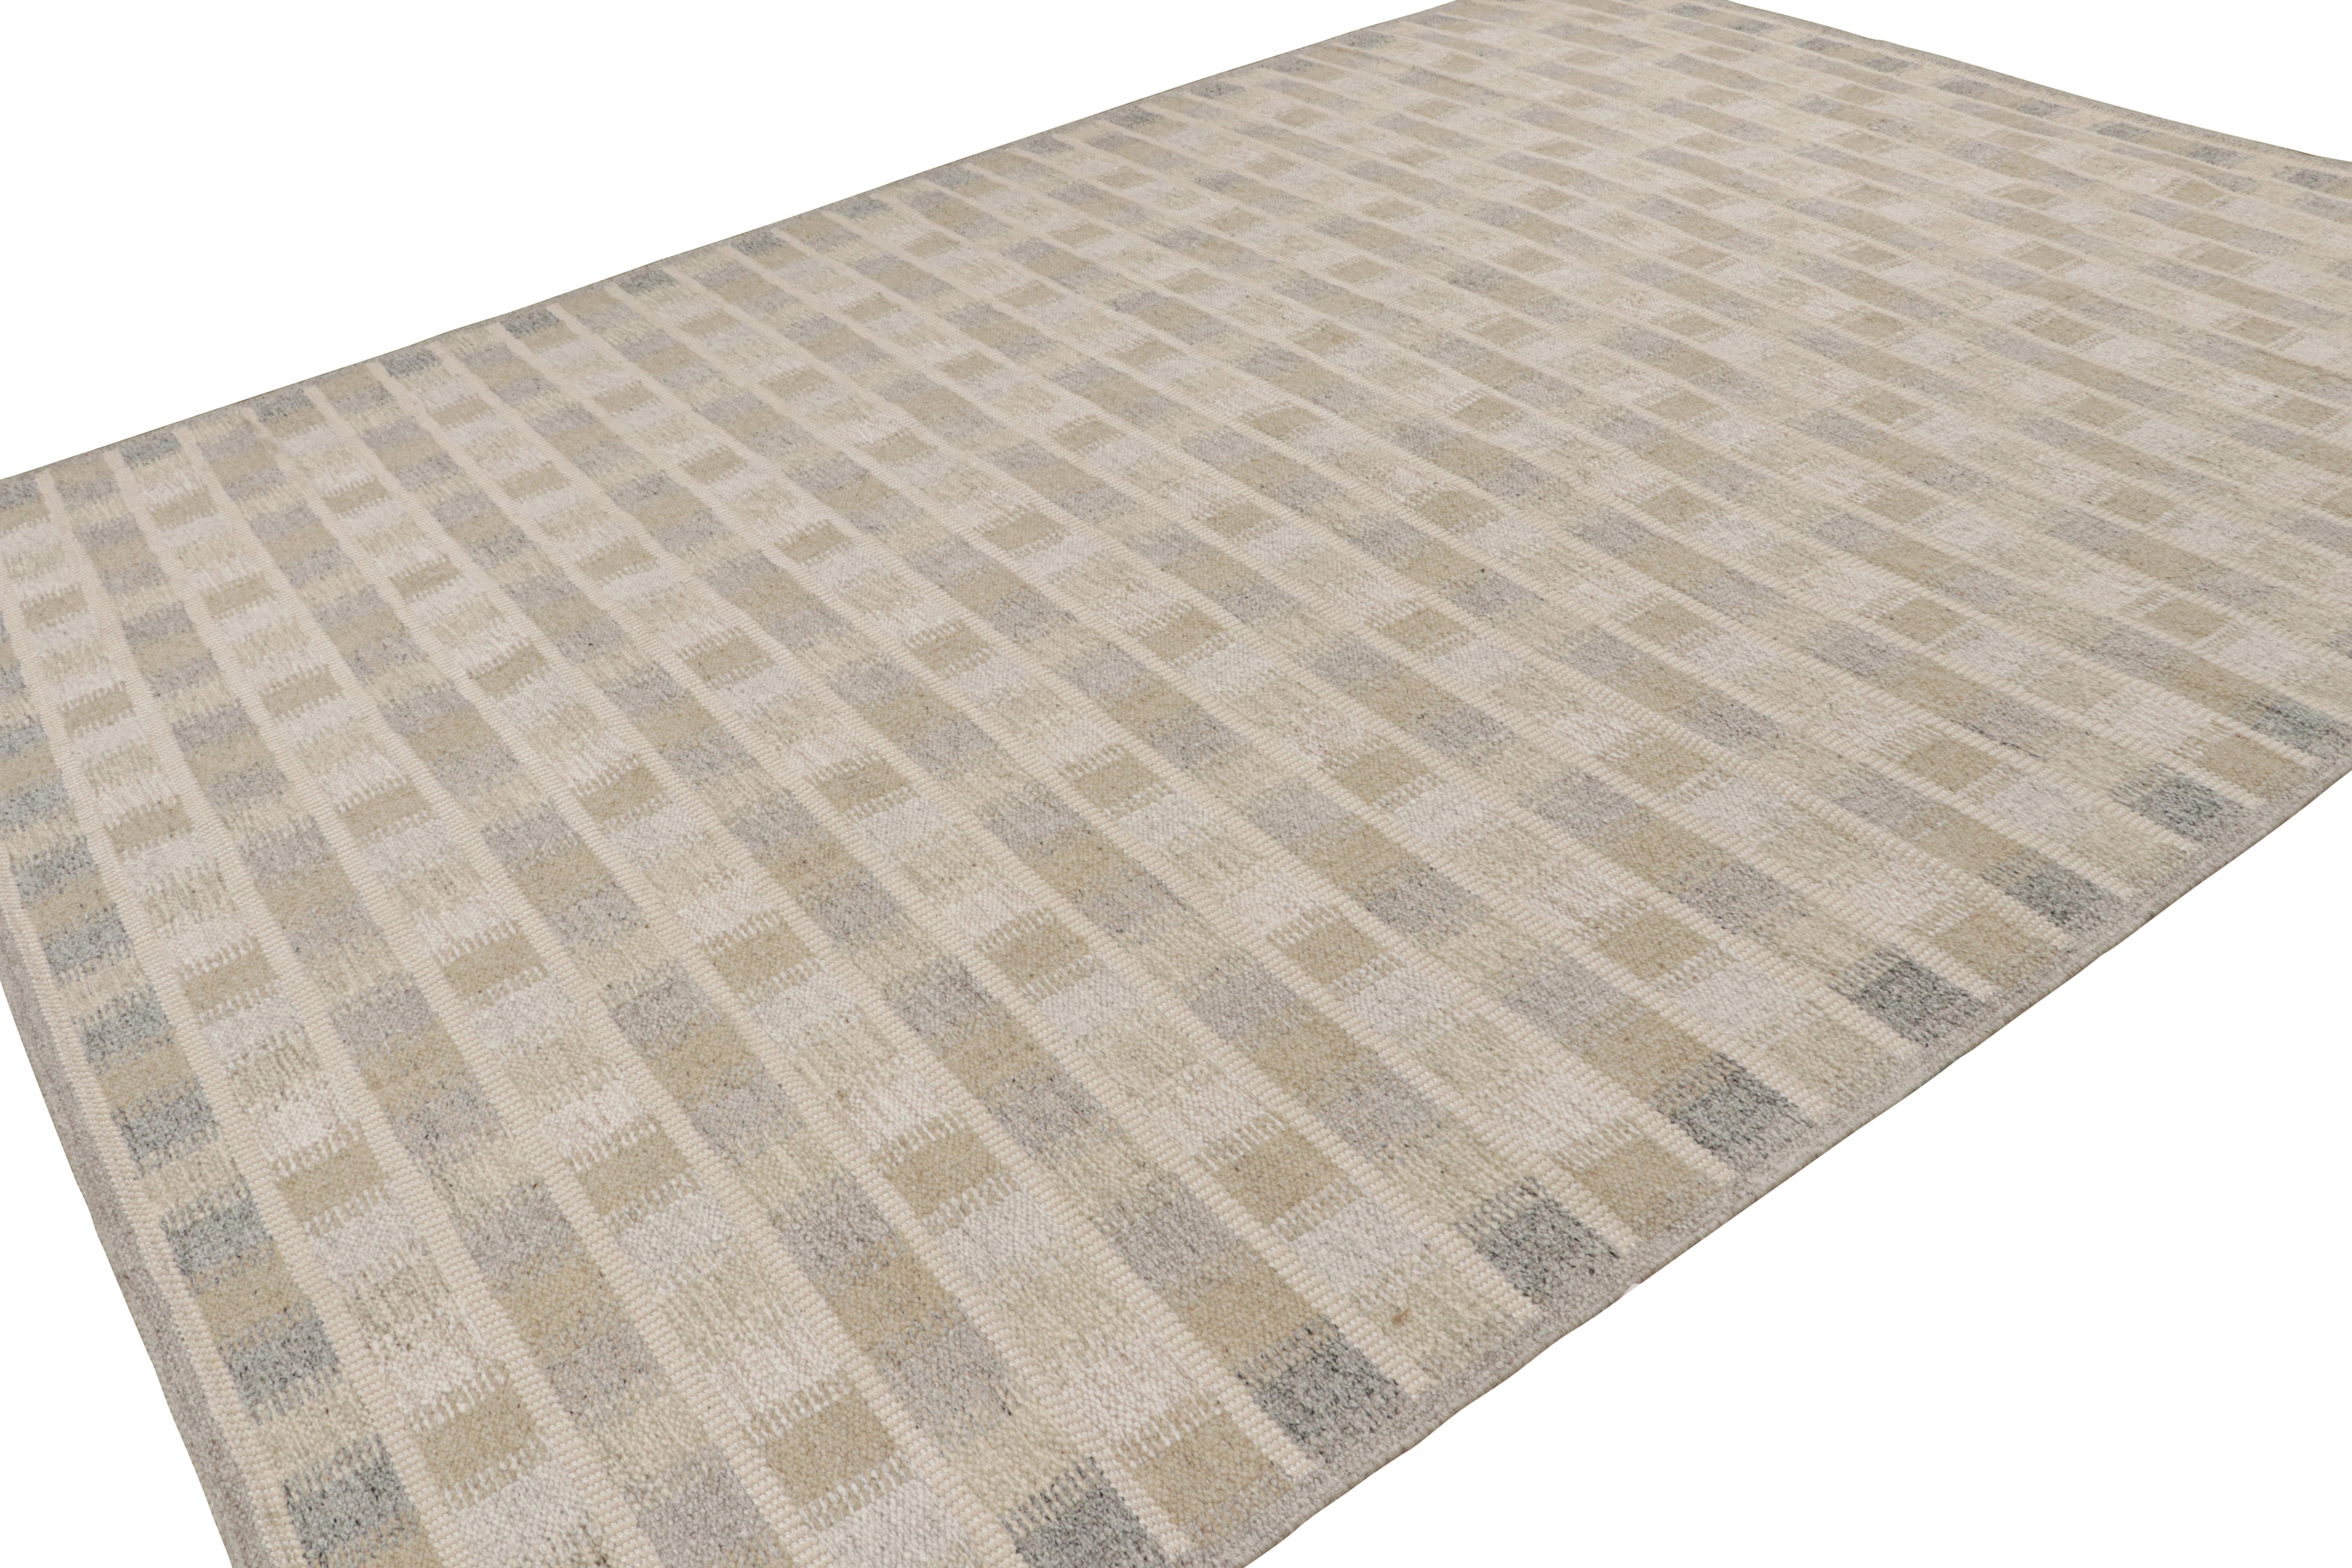 Dieser 10x14 große schwedische Kilim-Teppich gehört zu den Flachgeweben der skandinavischen Teppichkollektion von Rug & Kilim. Das Design des aus Wolle und Baumwolle handgewebten Teppichs ist von Rollakhan- und Rya-Teppichen im schwedischen